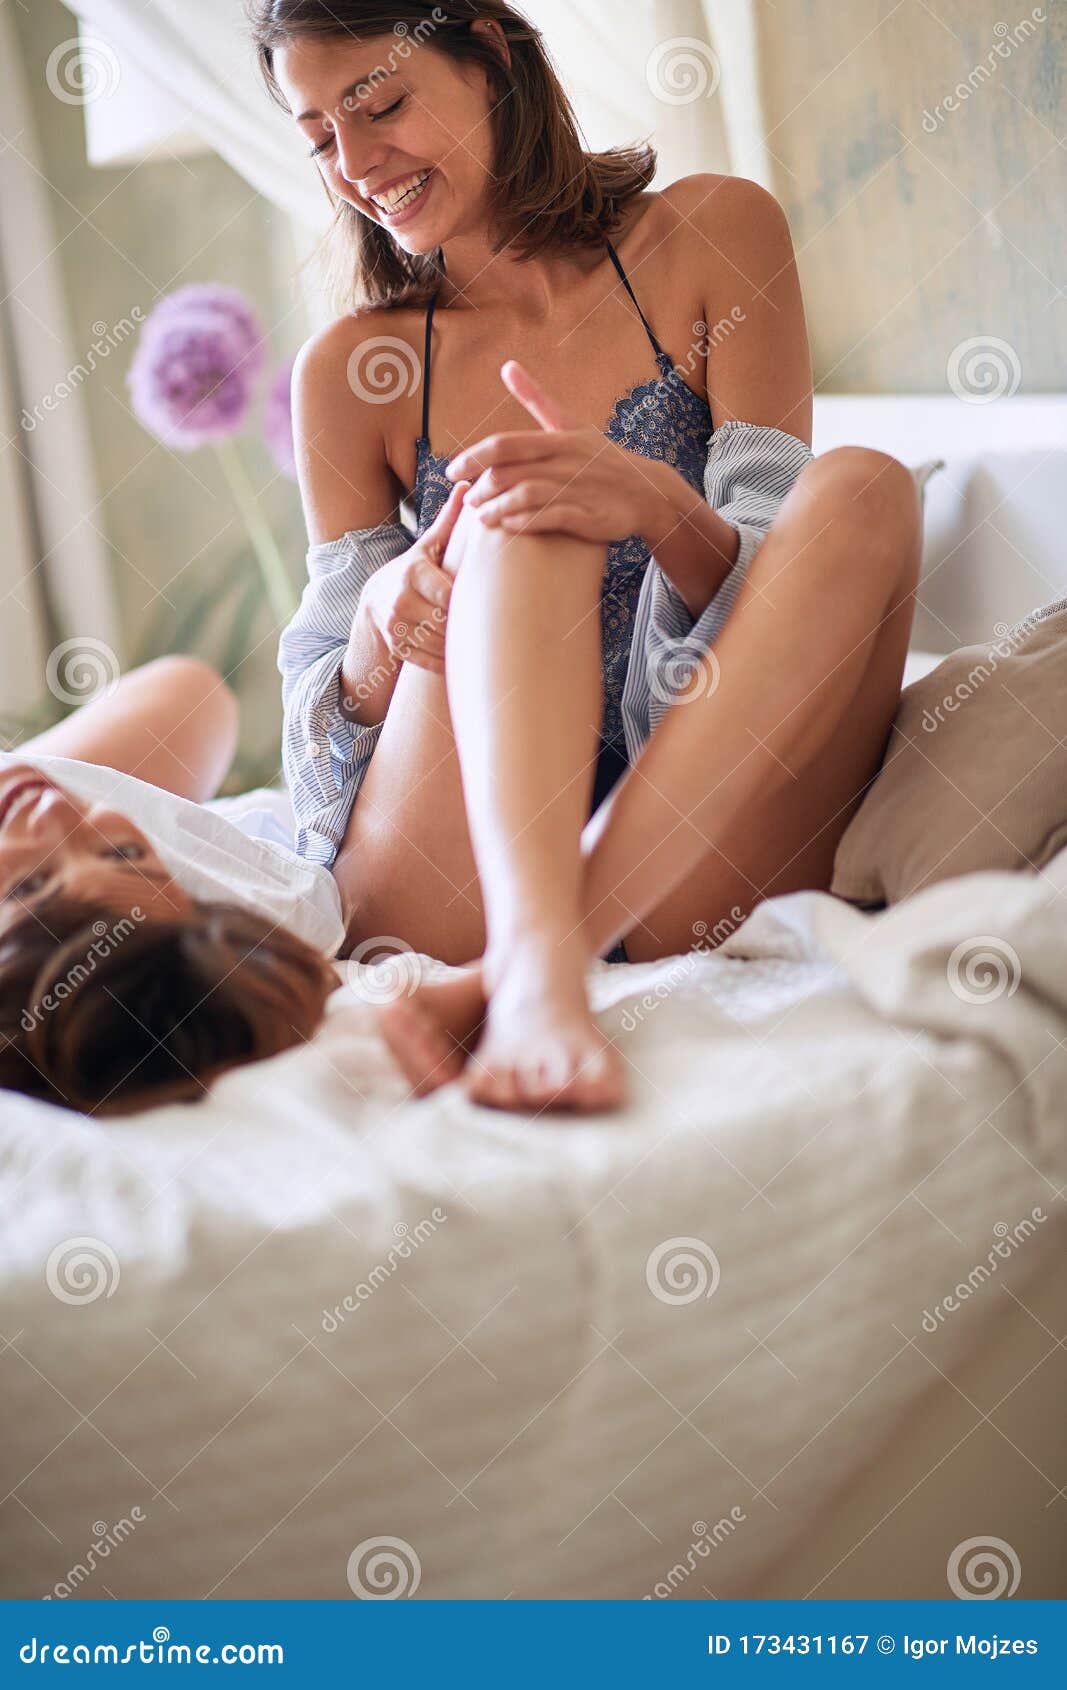 Lesbian sex foto